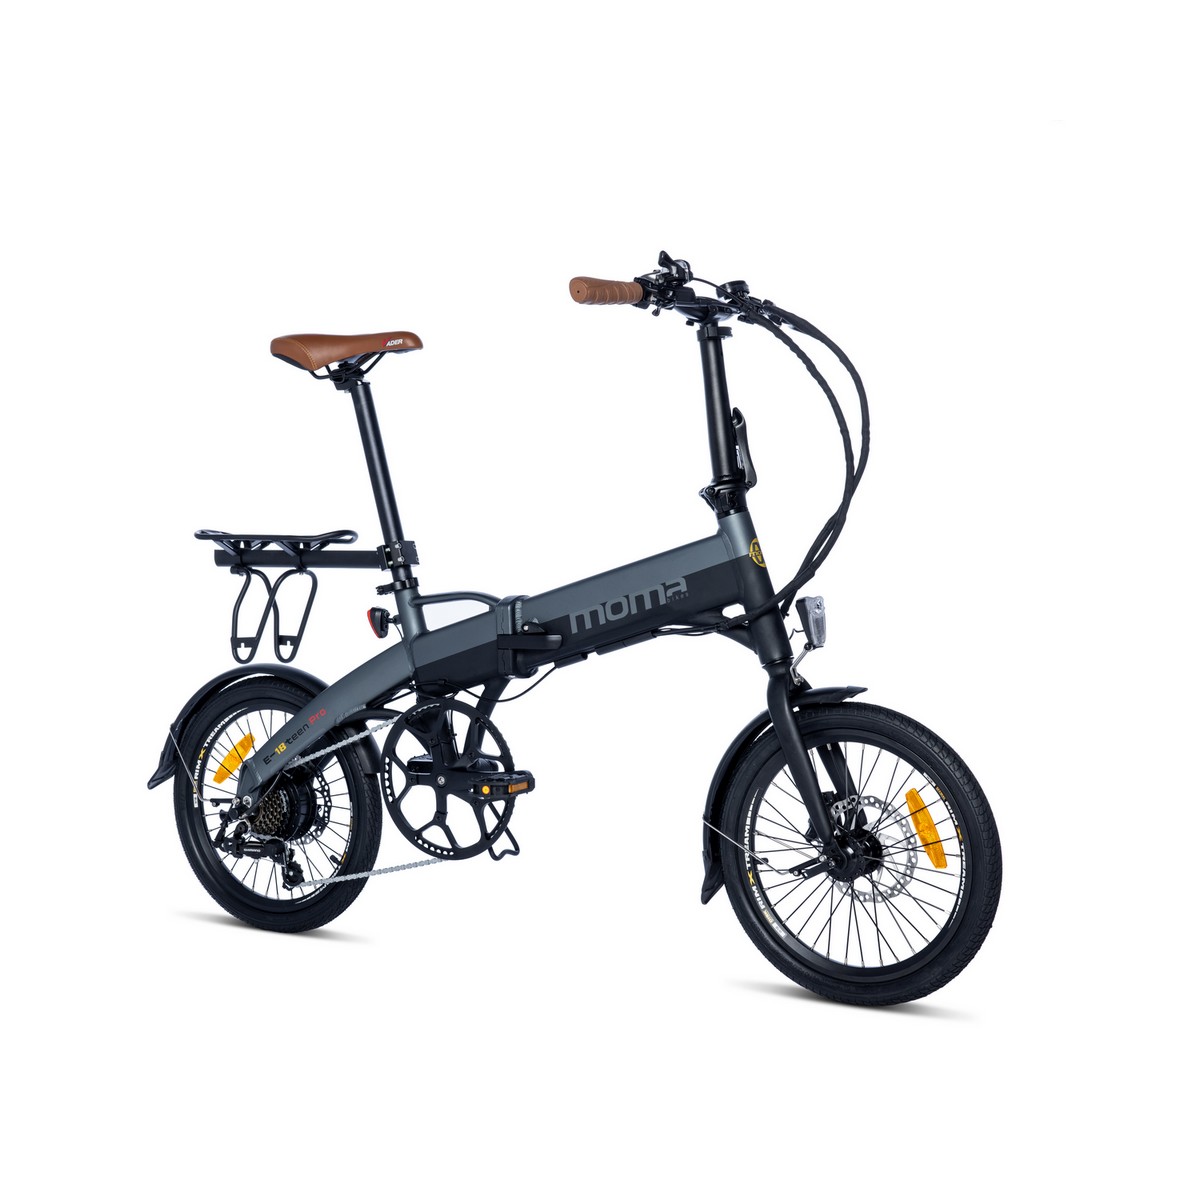 Bicicleta Electrica Plegable, Moma Bikes E18teen, Aluminio. Shimano 7v. Bat. Ion Litio 36v 9ah - gris - 